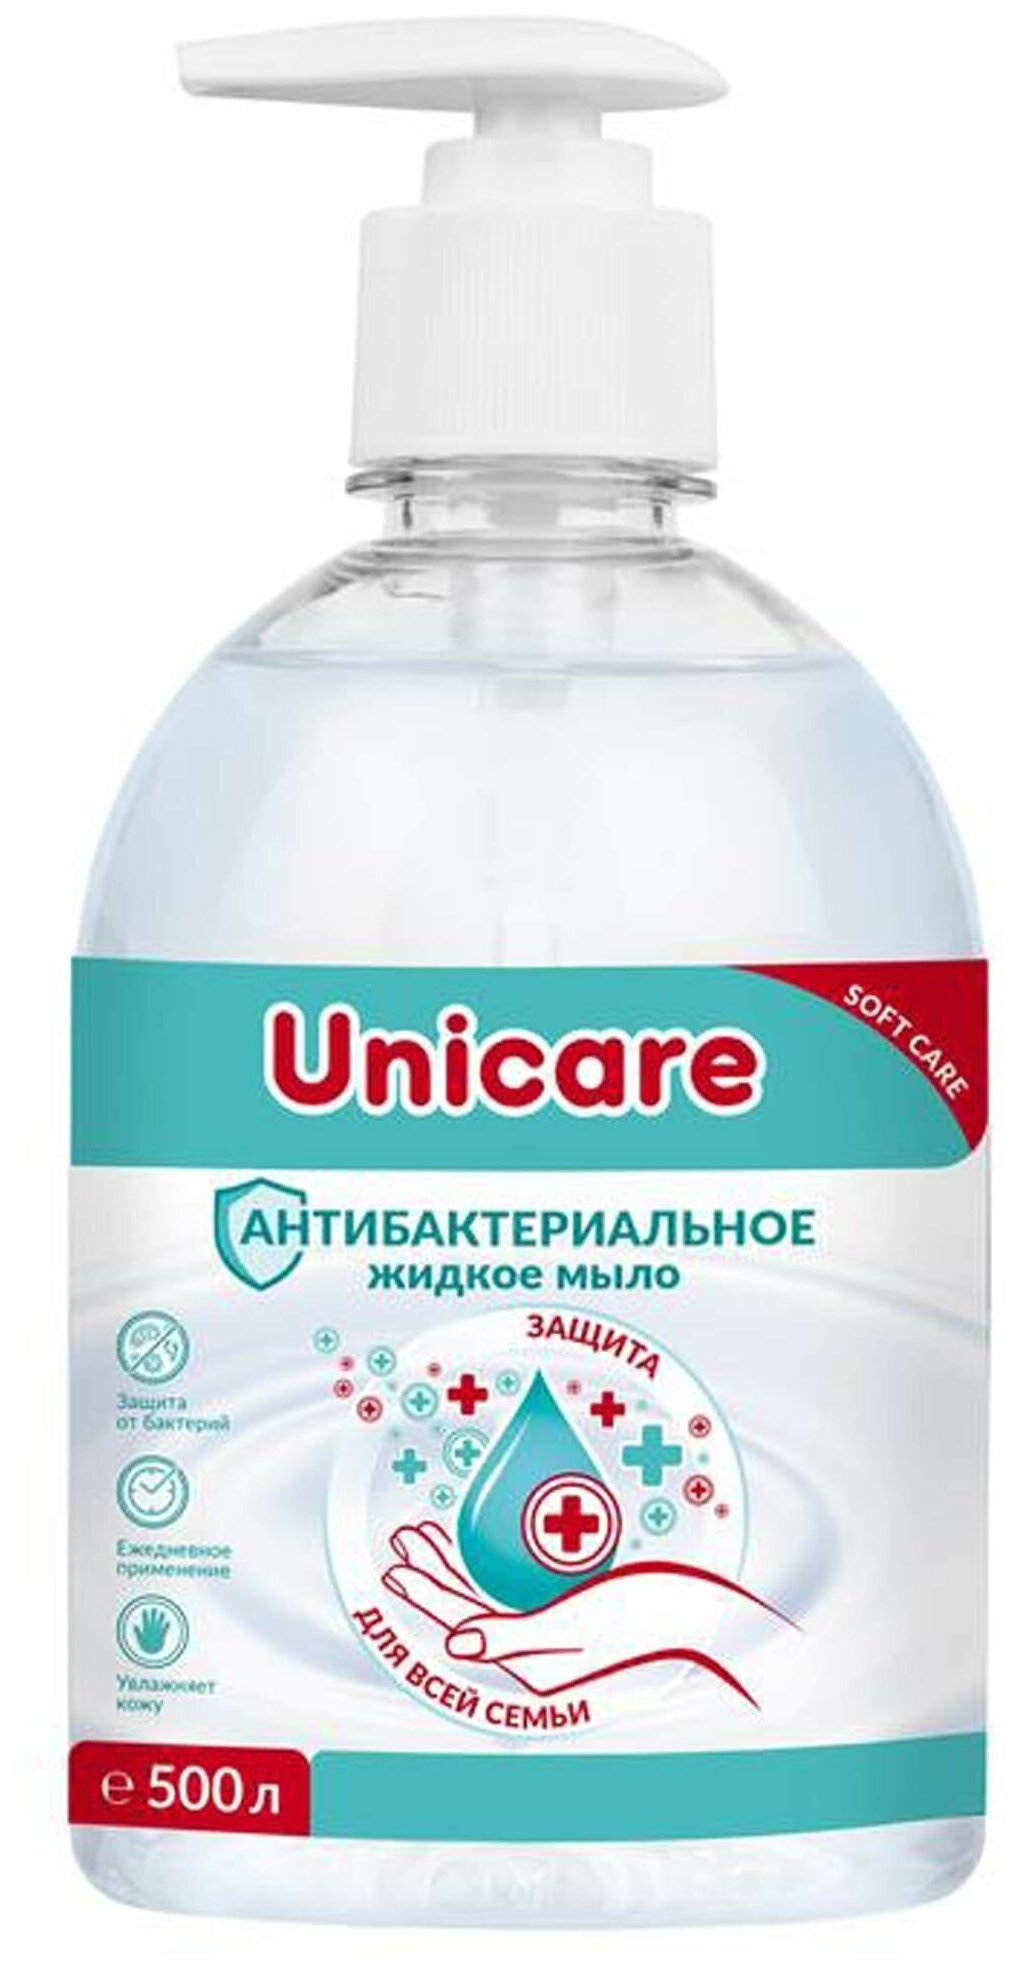 Unicare Мыло жидкое Антибактериальное